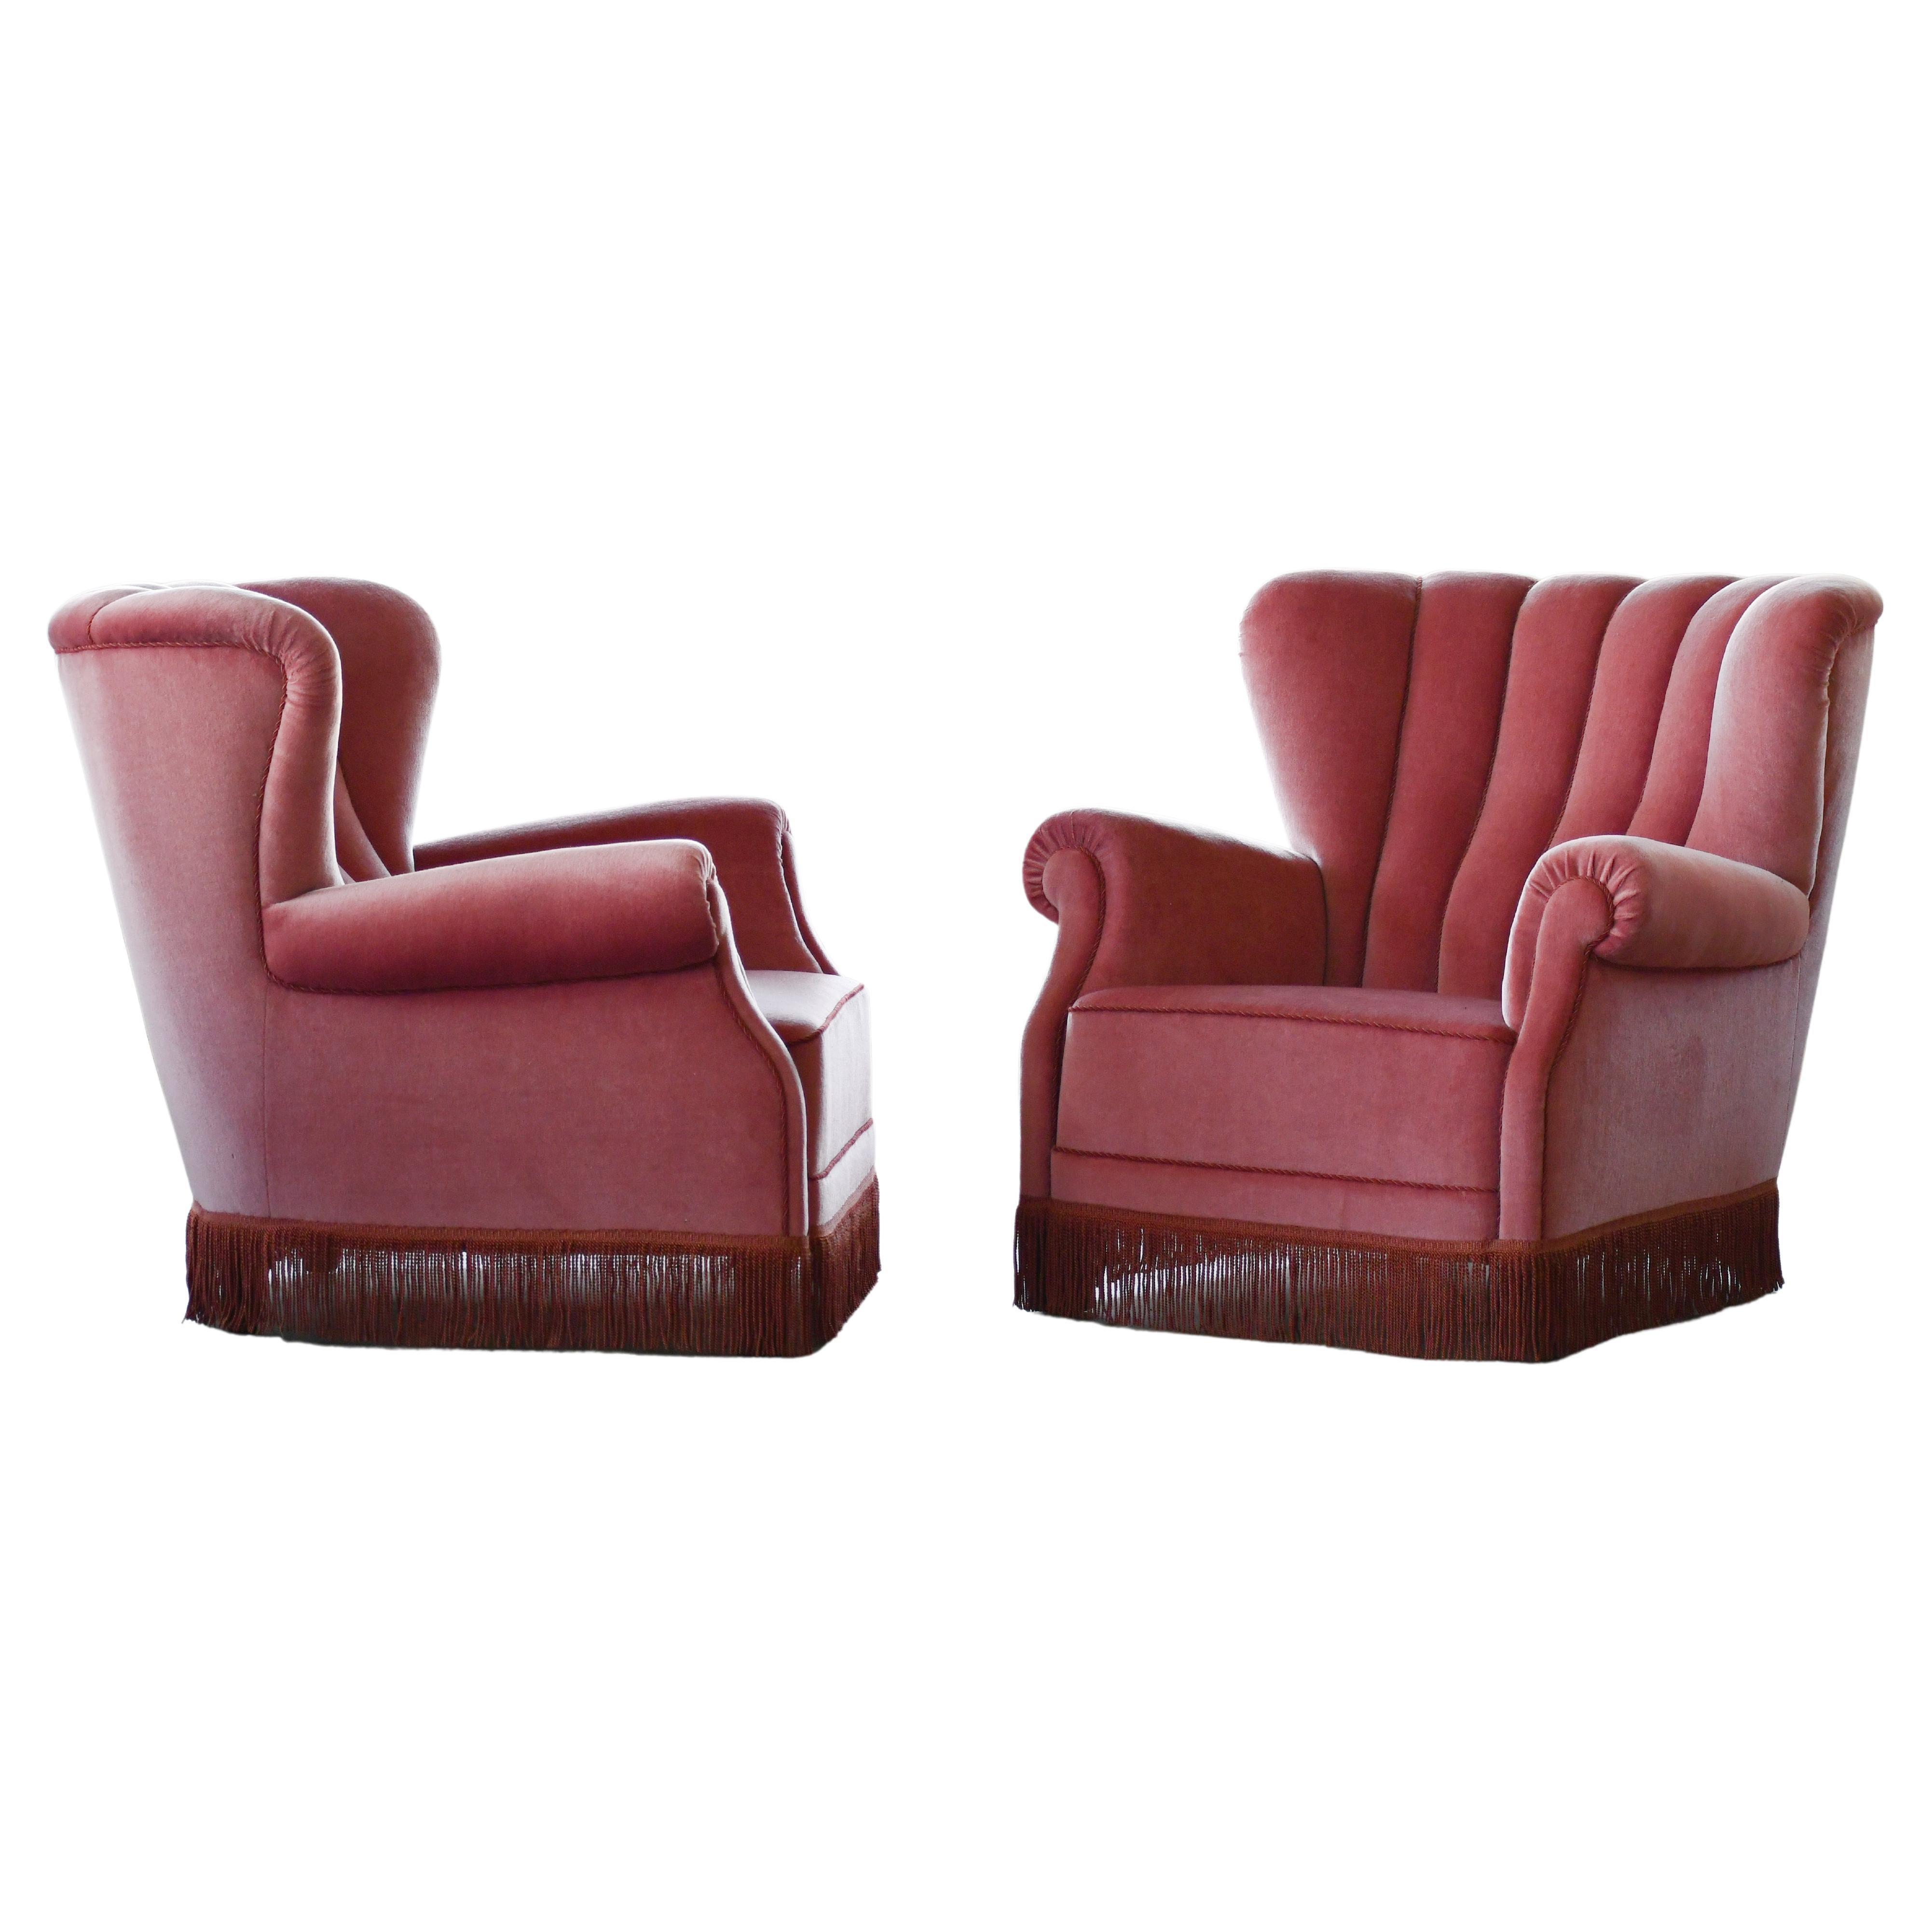 Paire de grands fauteuils club danois des années 1940, modèle 1518 de Fritz Hansen en mohair rose